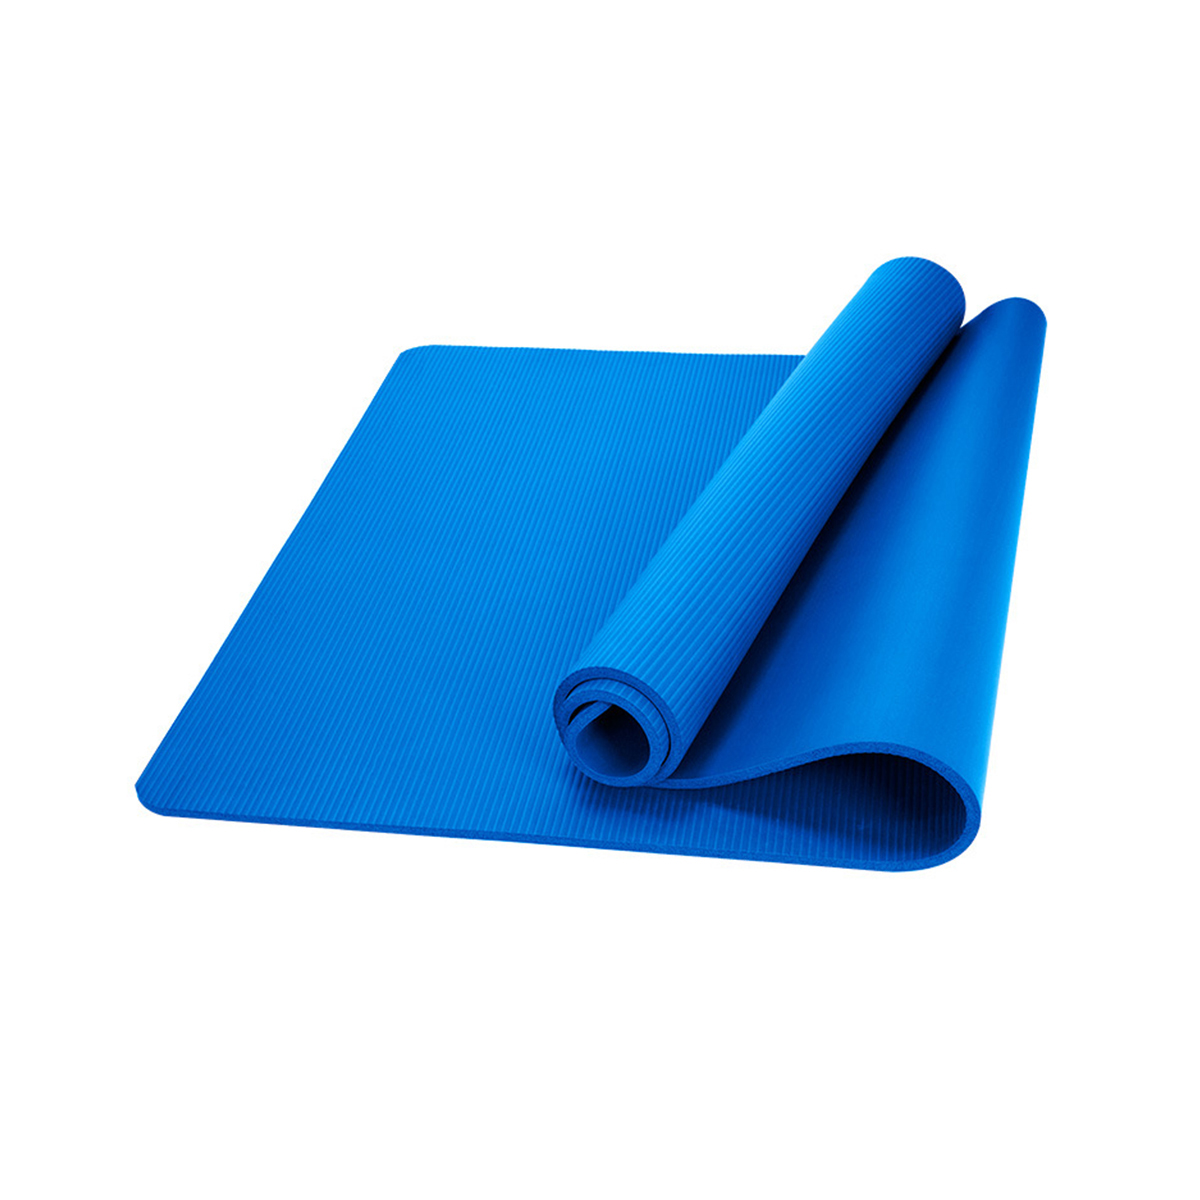 

Противоскользящее покрытие толщиной 10 мм Yoga Коврик для упражнений Фитнес Коврики для обучения пилатесу Спортзал